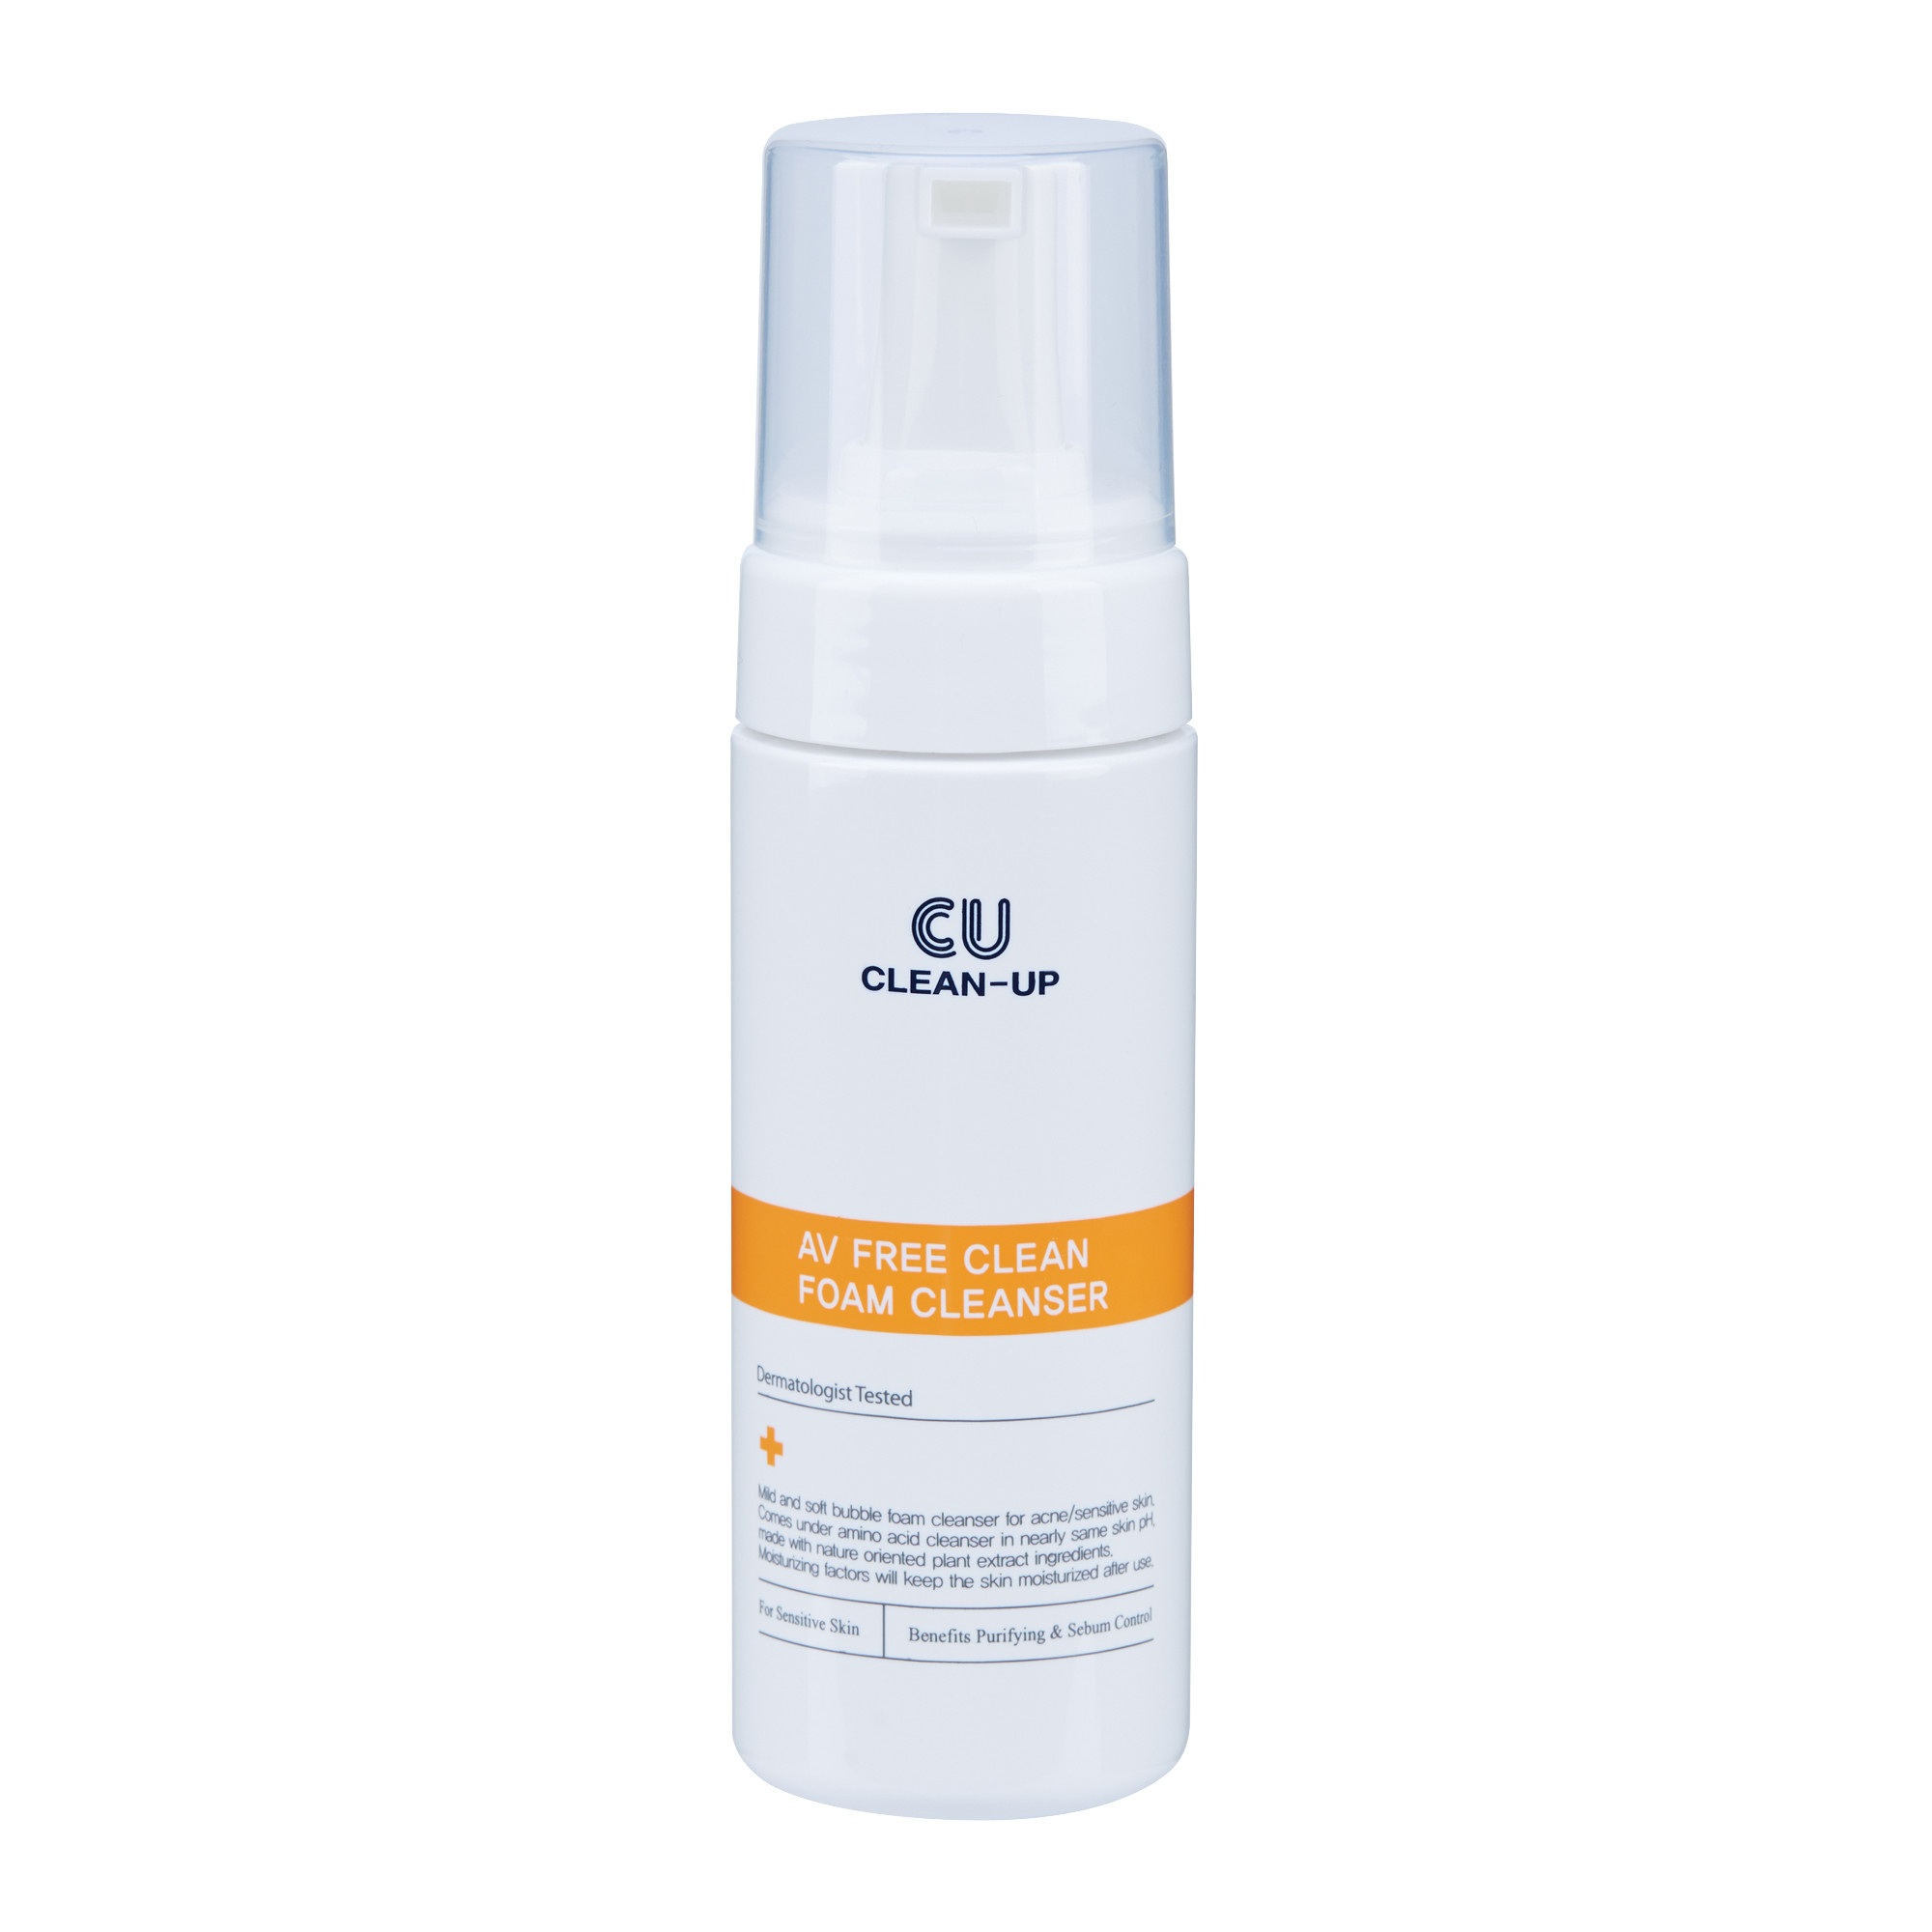 CU Skin Очищающая пенка для проблемной кожи